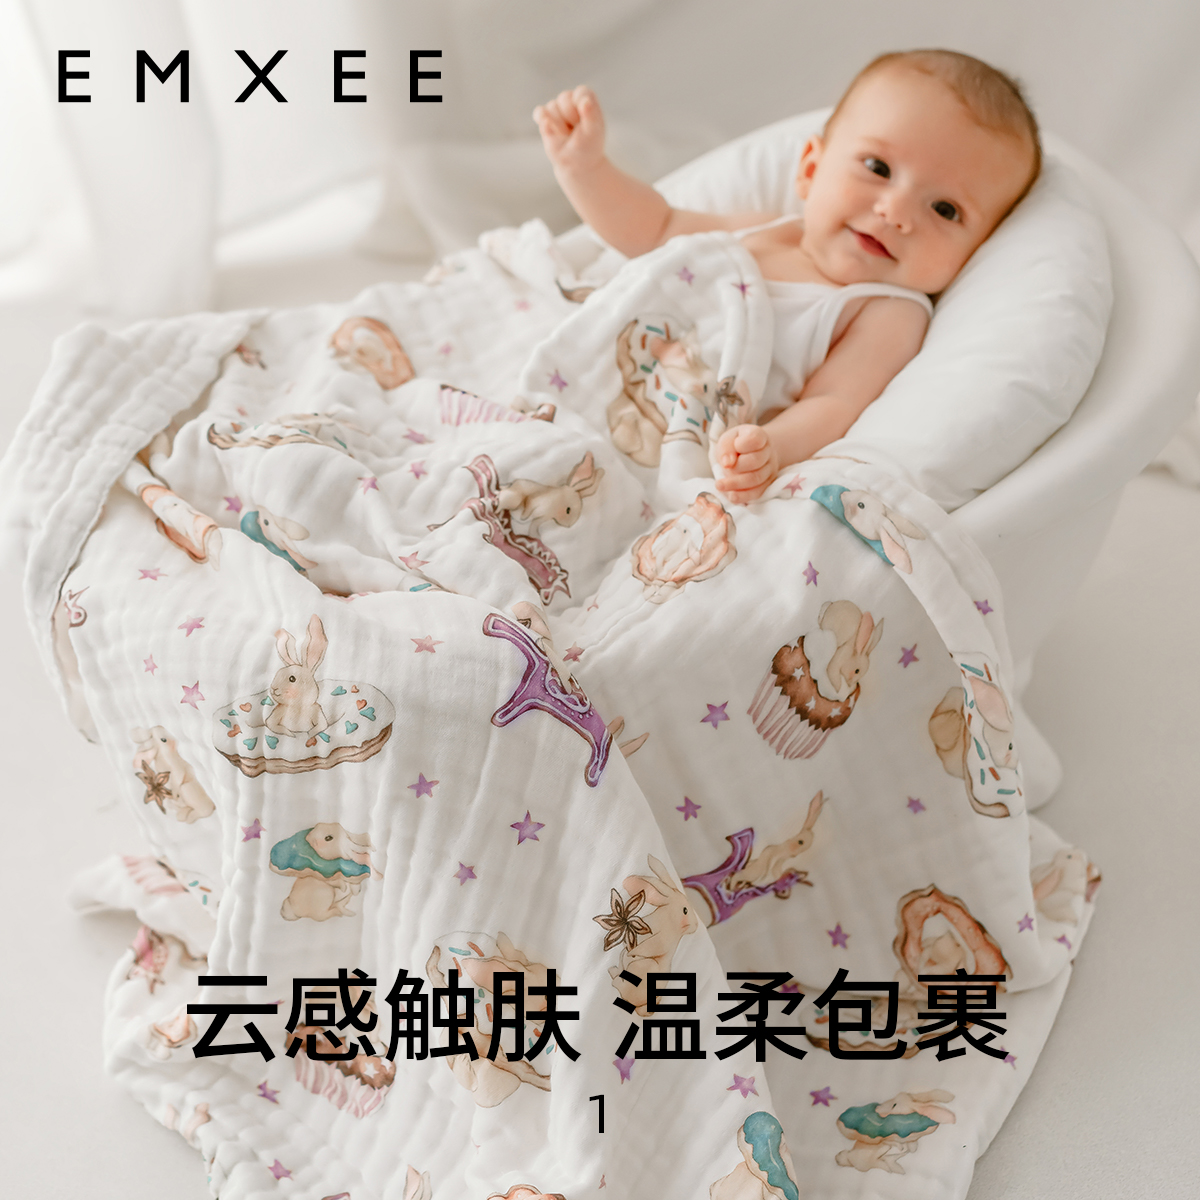 EMXEE 嫚熙 婴儿纱布浴巾宝宝新生儿童 120元